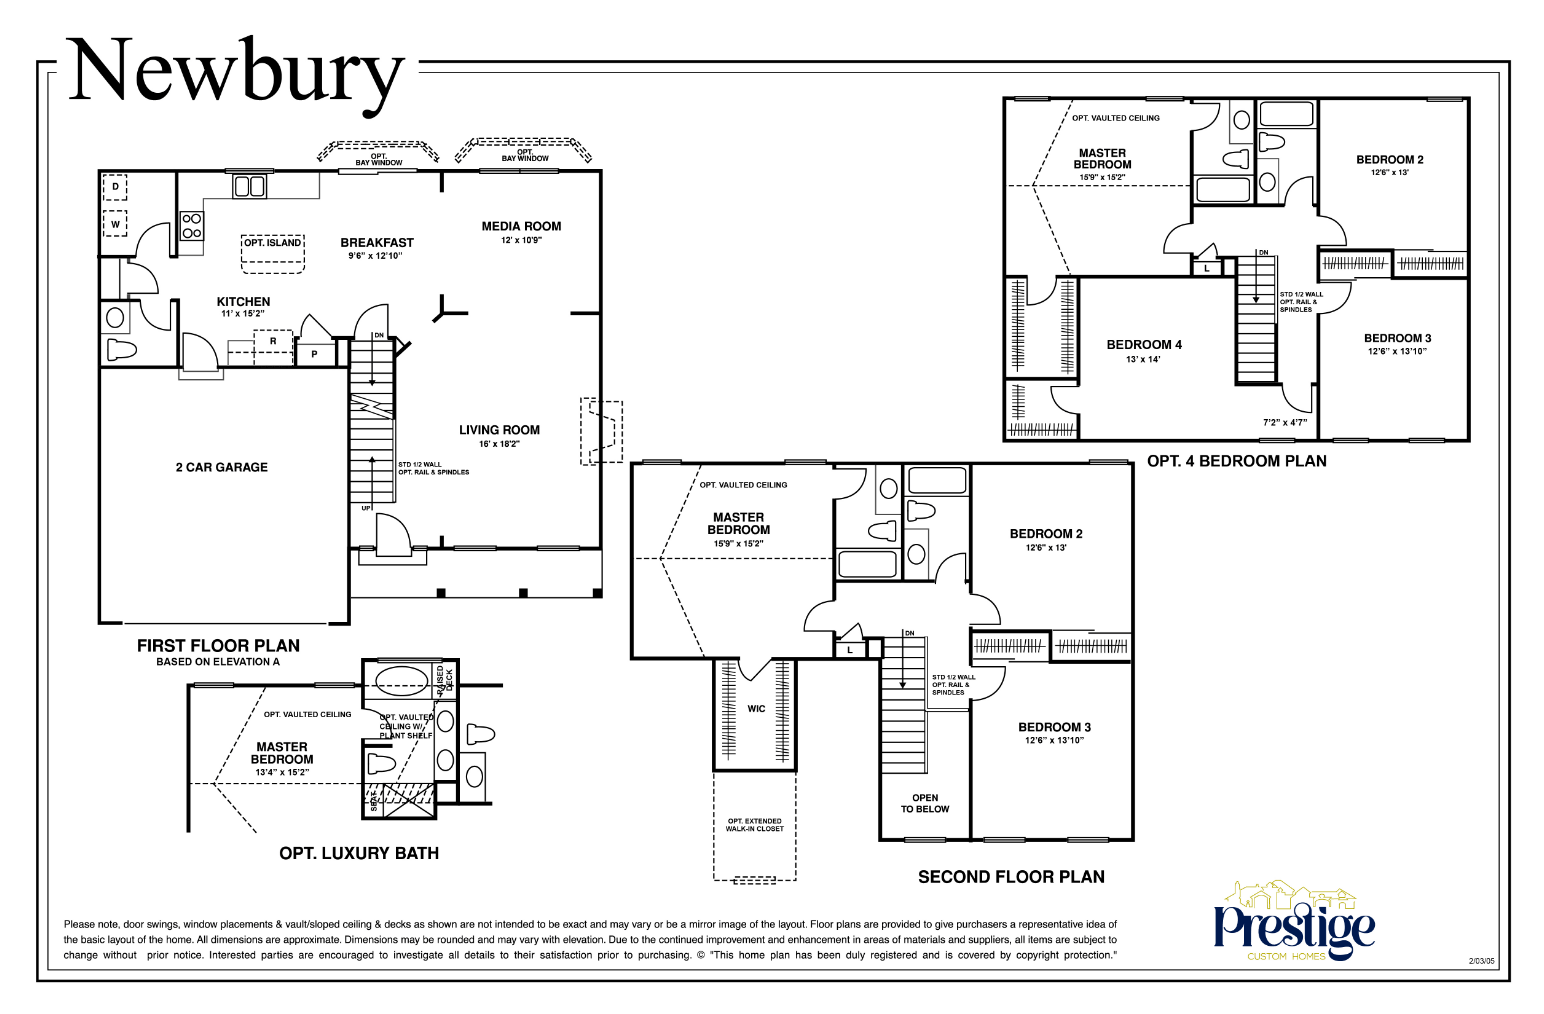 newbury-floor-plan-prestige-custom-homes